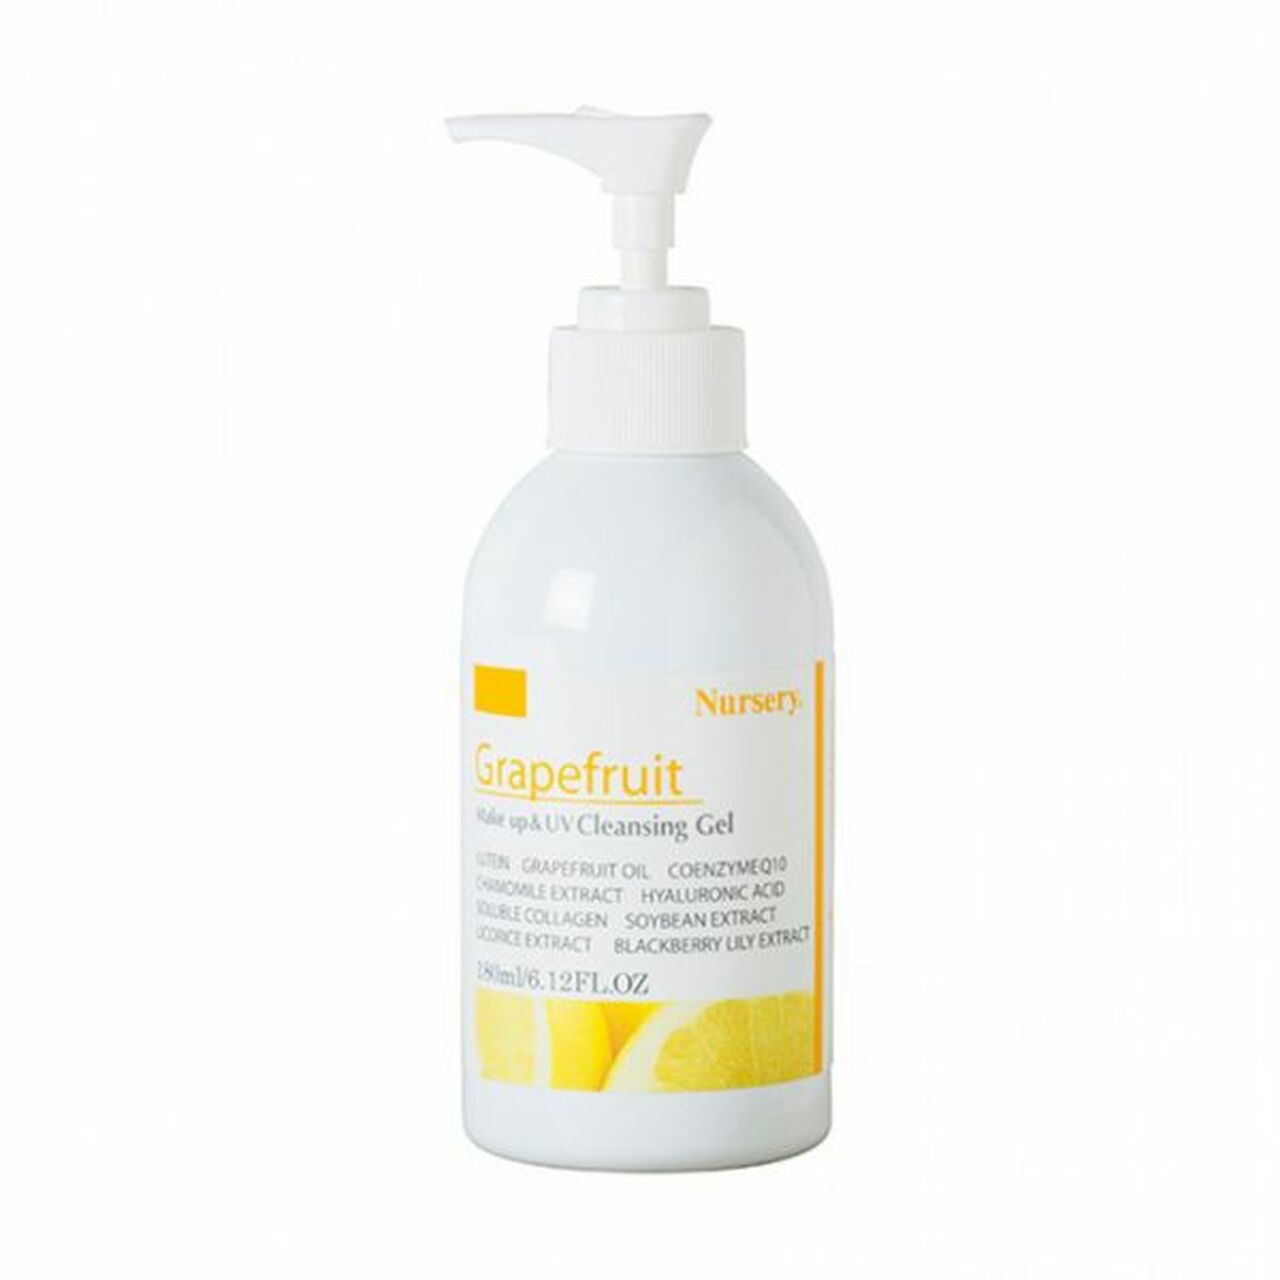 Nursery Make Up & UV Cleansing Gel (Grapefruit) Beauty Nursery   